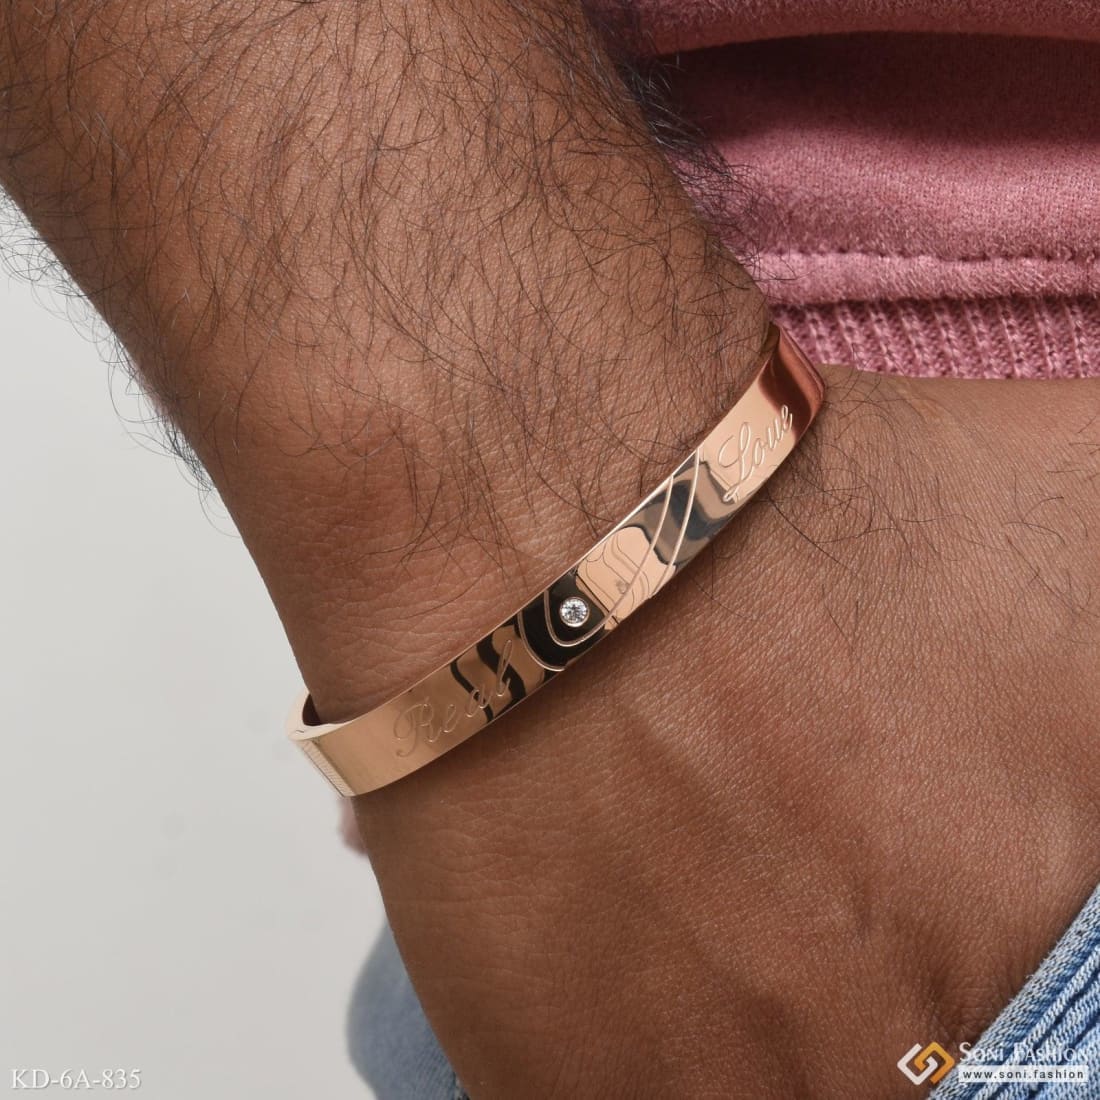 Buy Gold Men Upper Arm Cuff Bracelet, Men Bicep Bracelet, Spiral Men Arm  Cuff , Gift for Him Online in India - Etsy